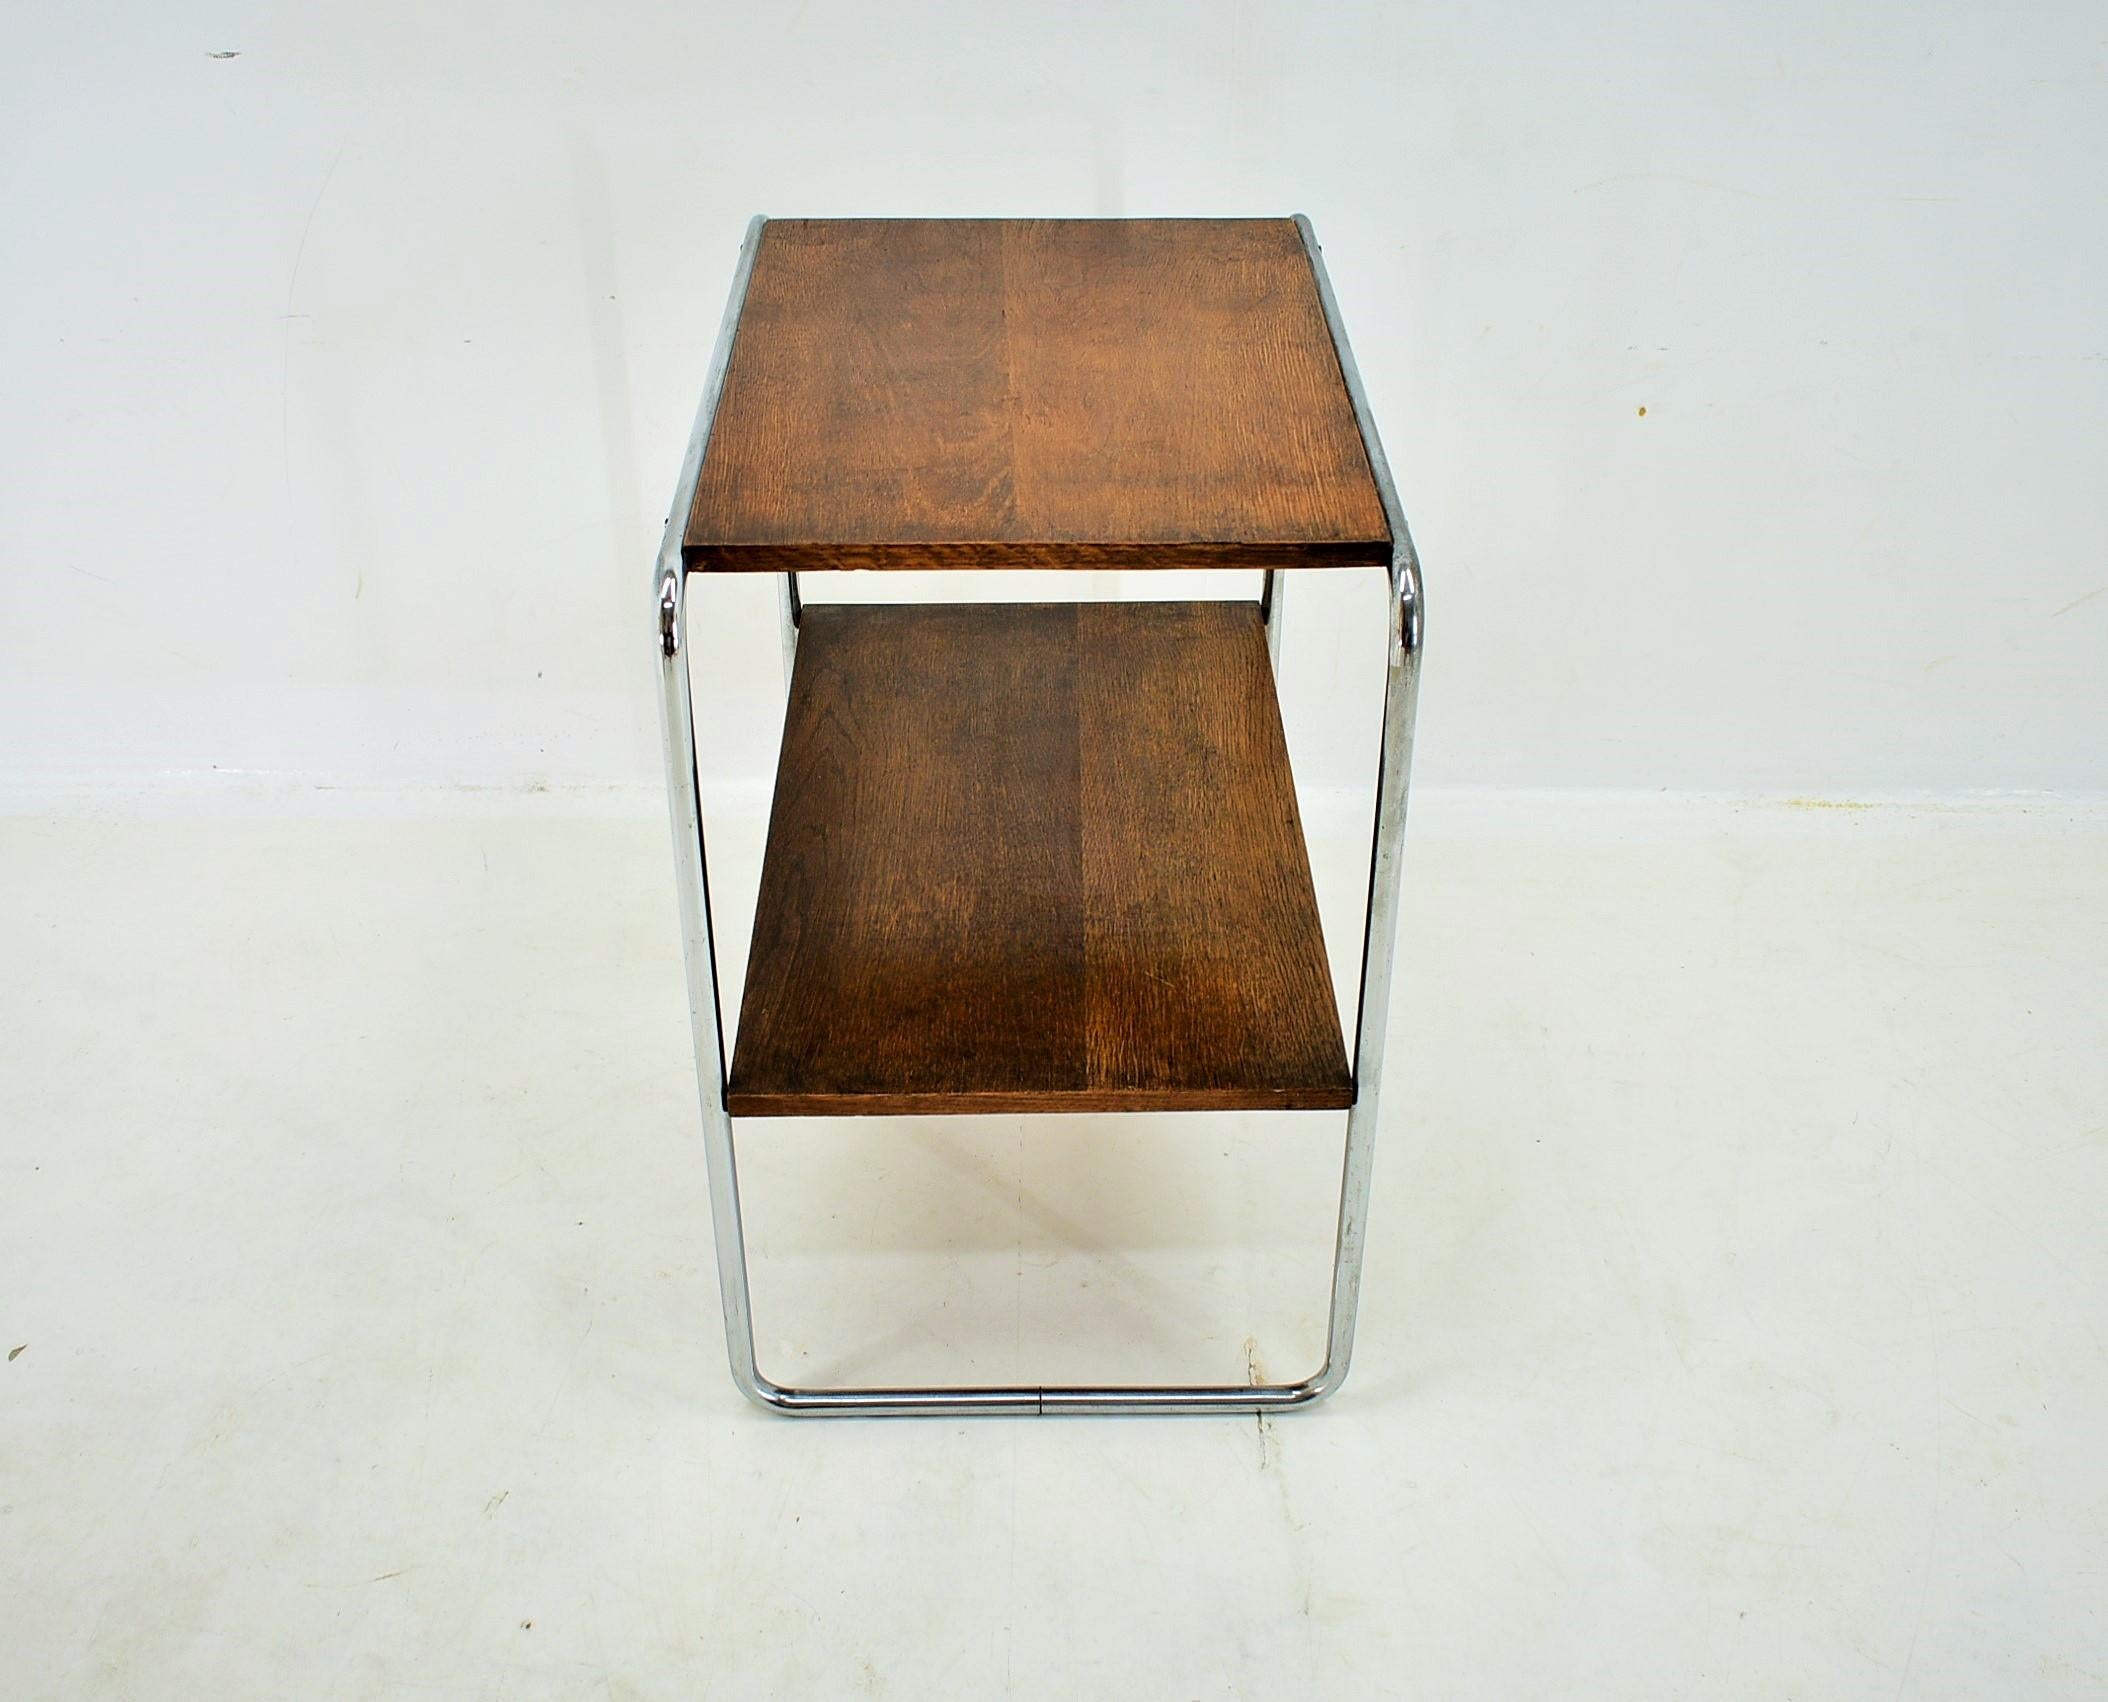 Bauhaus Chrome Table by Marcel Breuer for Mucke Melder, 1930s For Sale 4